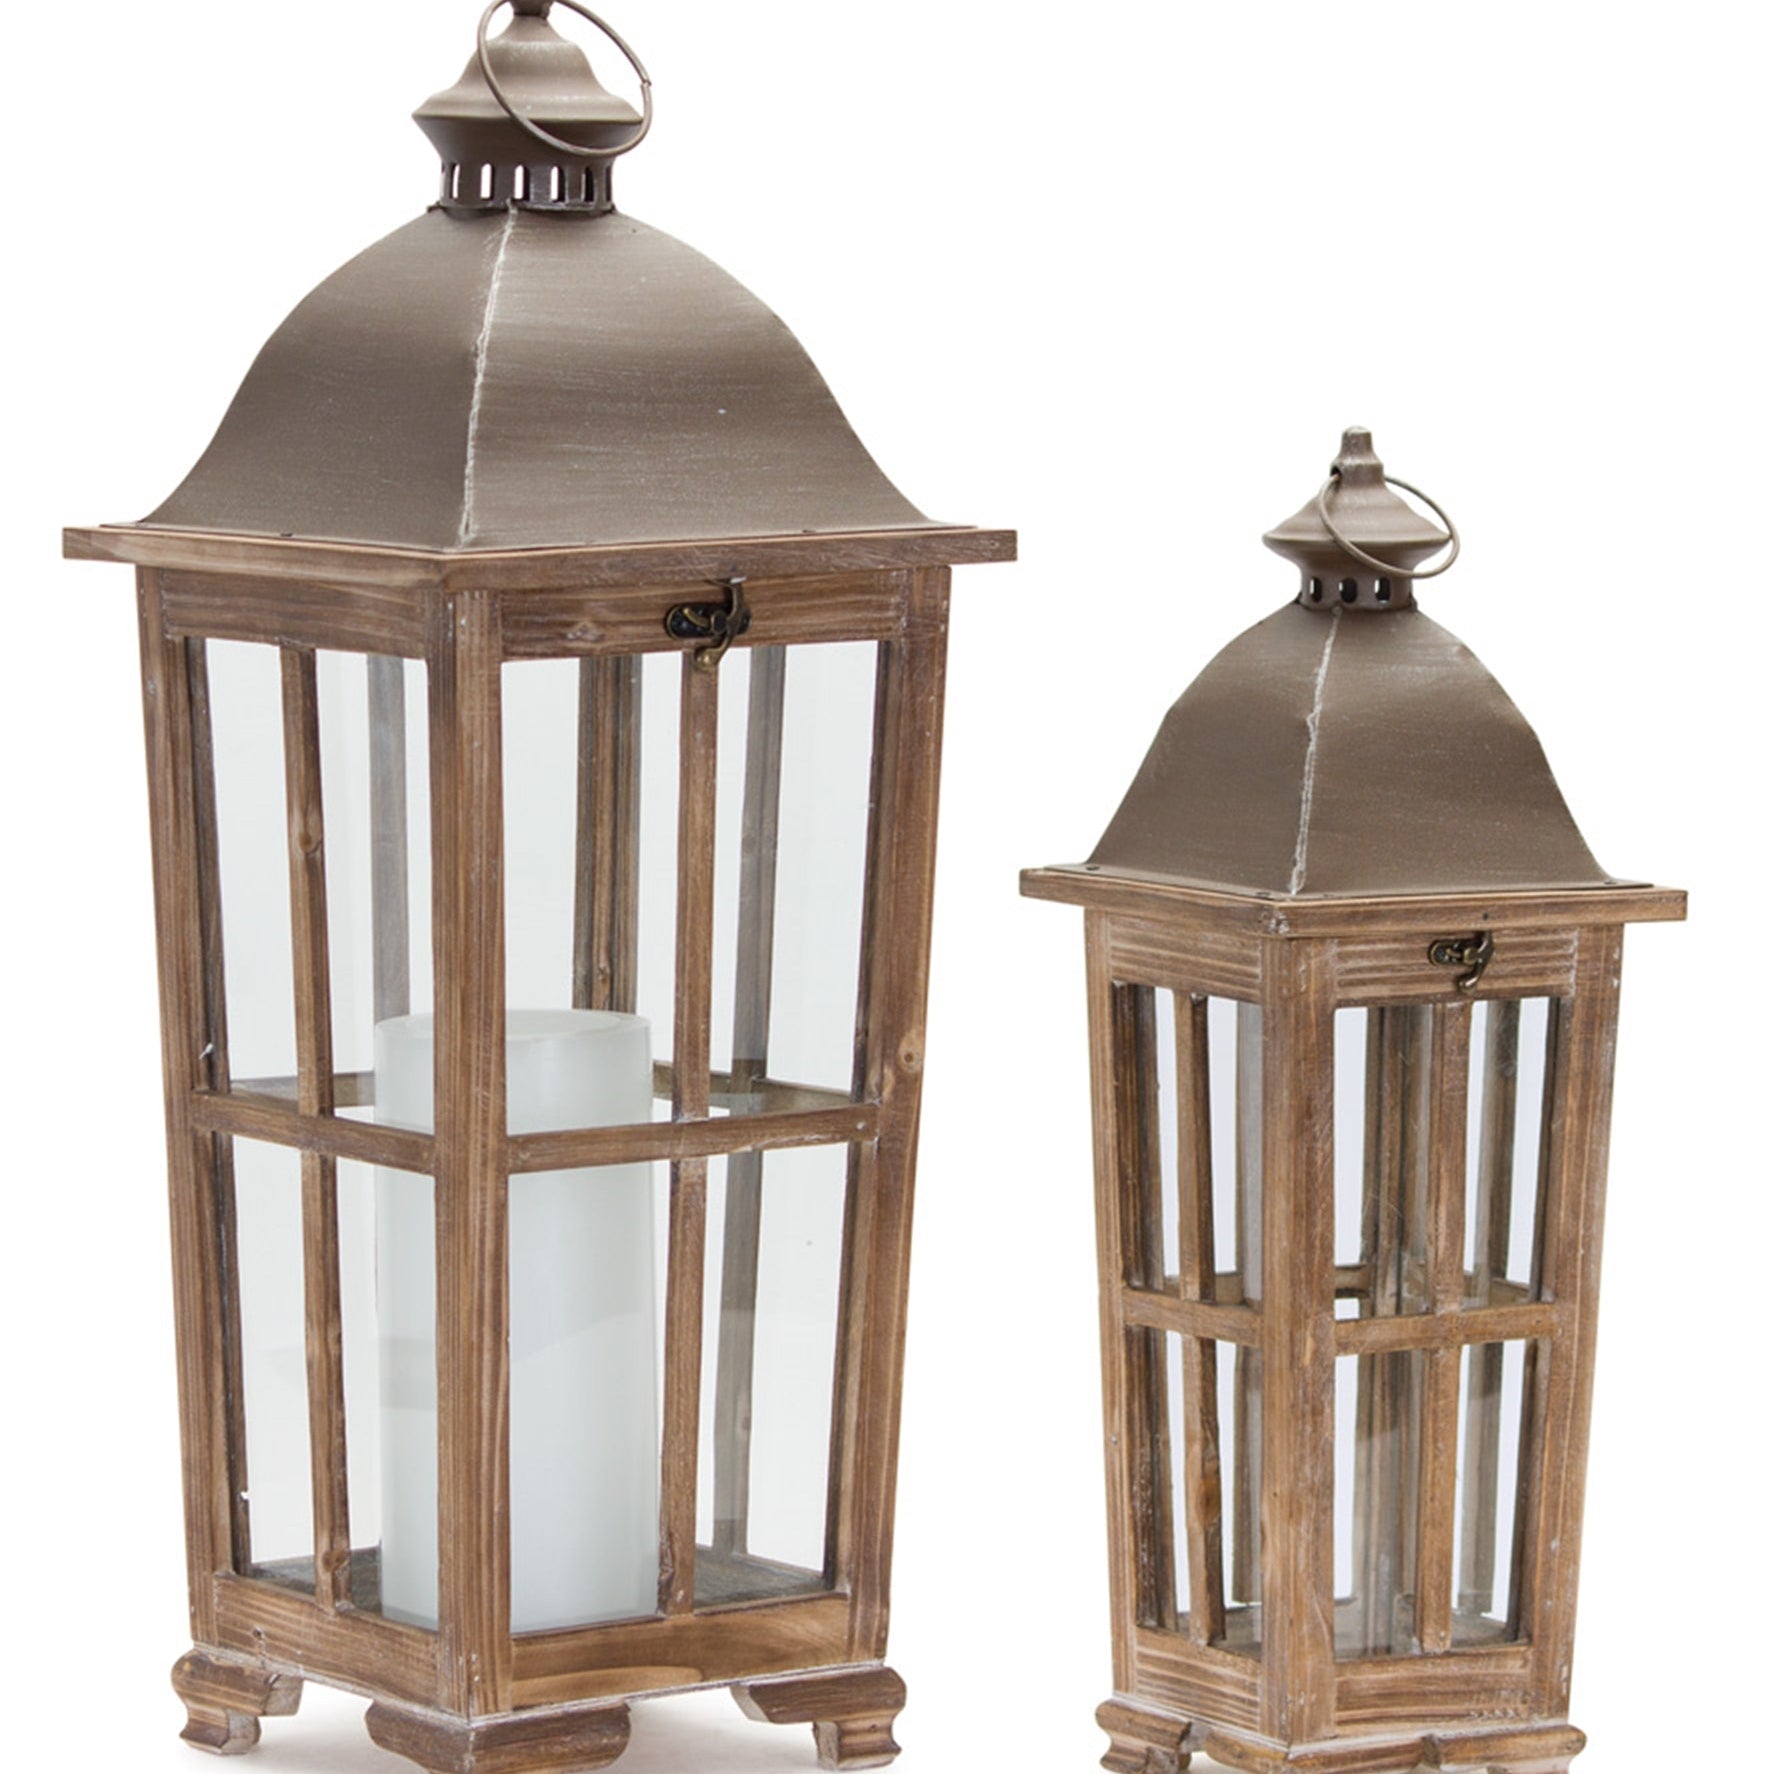 Tapered Wood Lantern with Metal Lid (Set of 2) - Lanterns